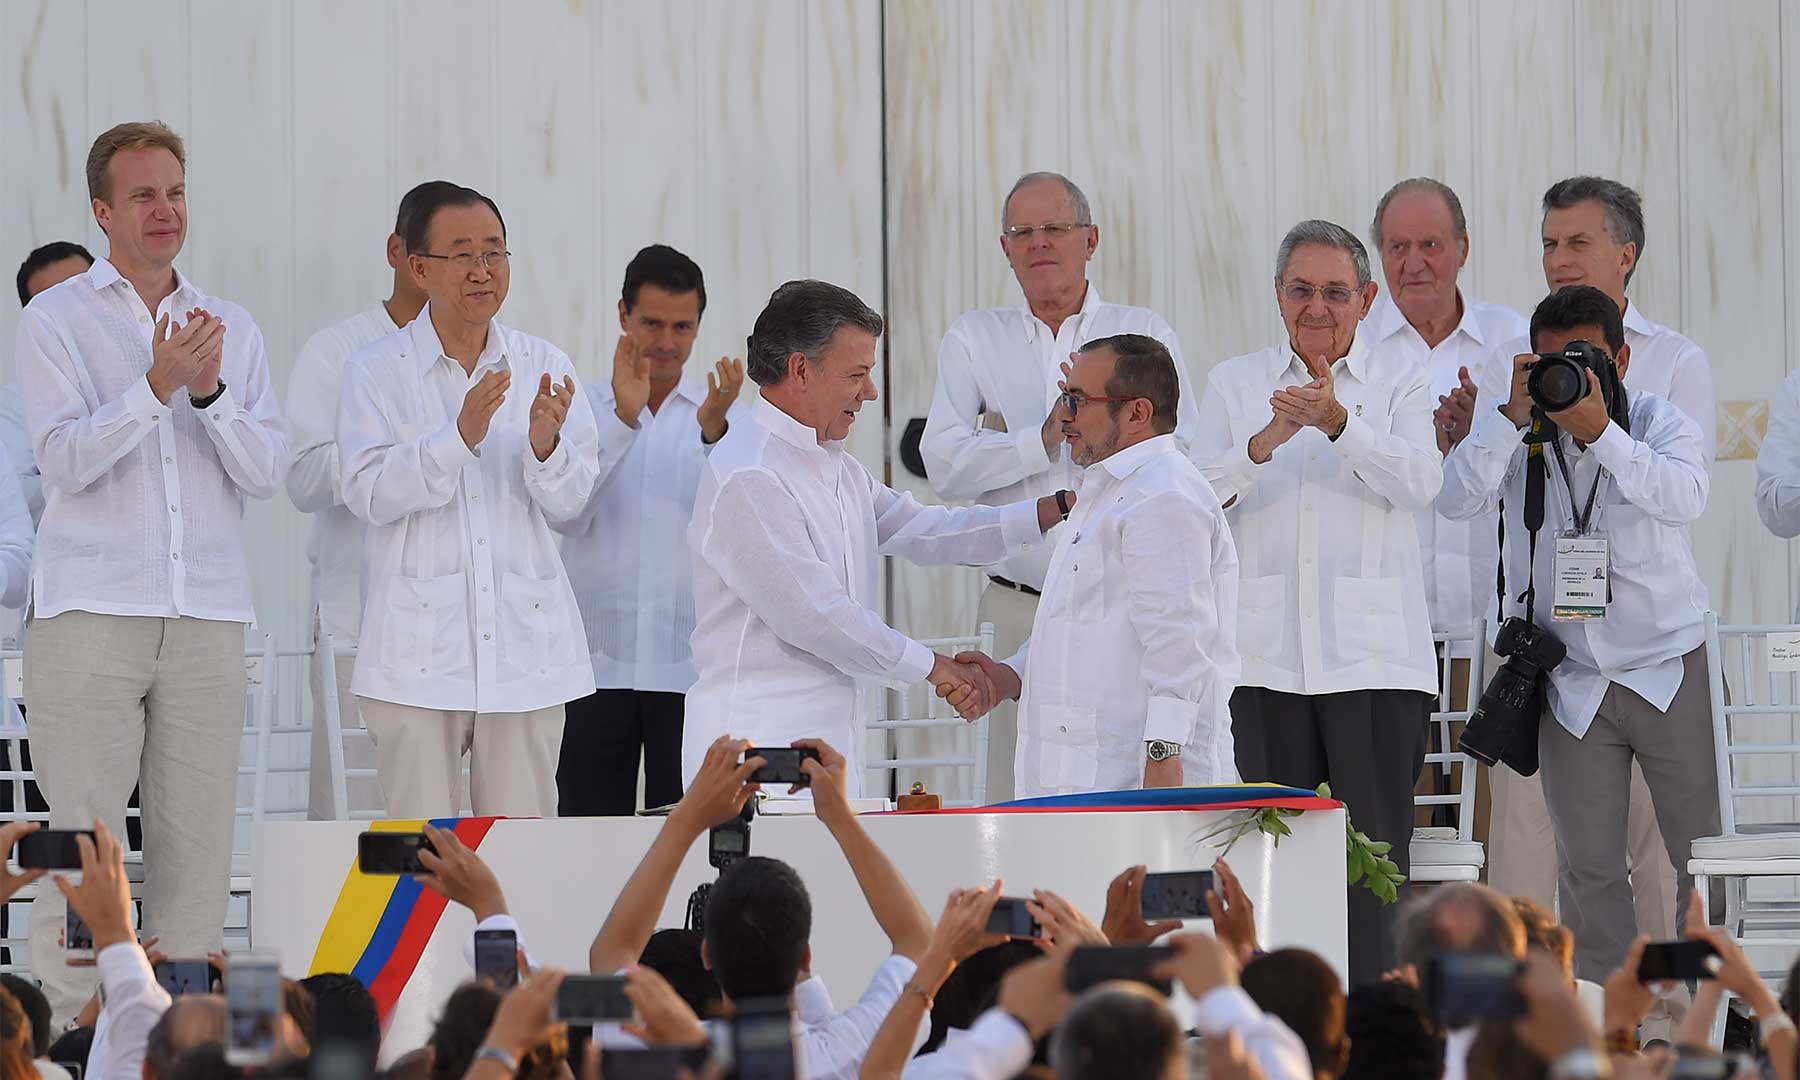 Apretón de manos del Presidente Santos y Rodrigo Londoño, jefe de las Farc, tras la firma del histórico Acuerdo Final de Paz en Cartagena.

foto: Juan Pablo Bello - SIG